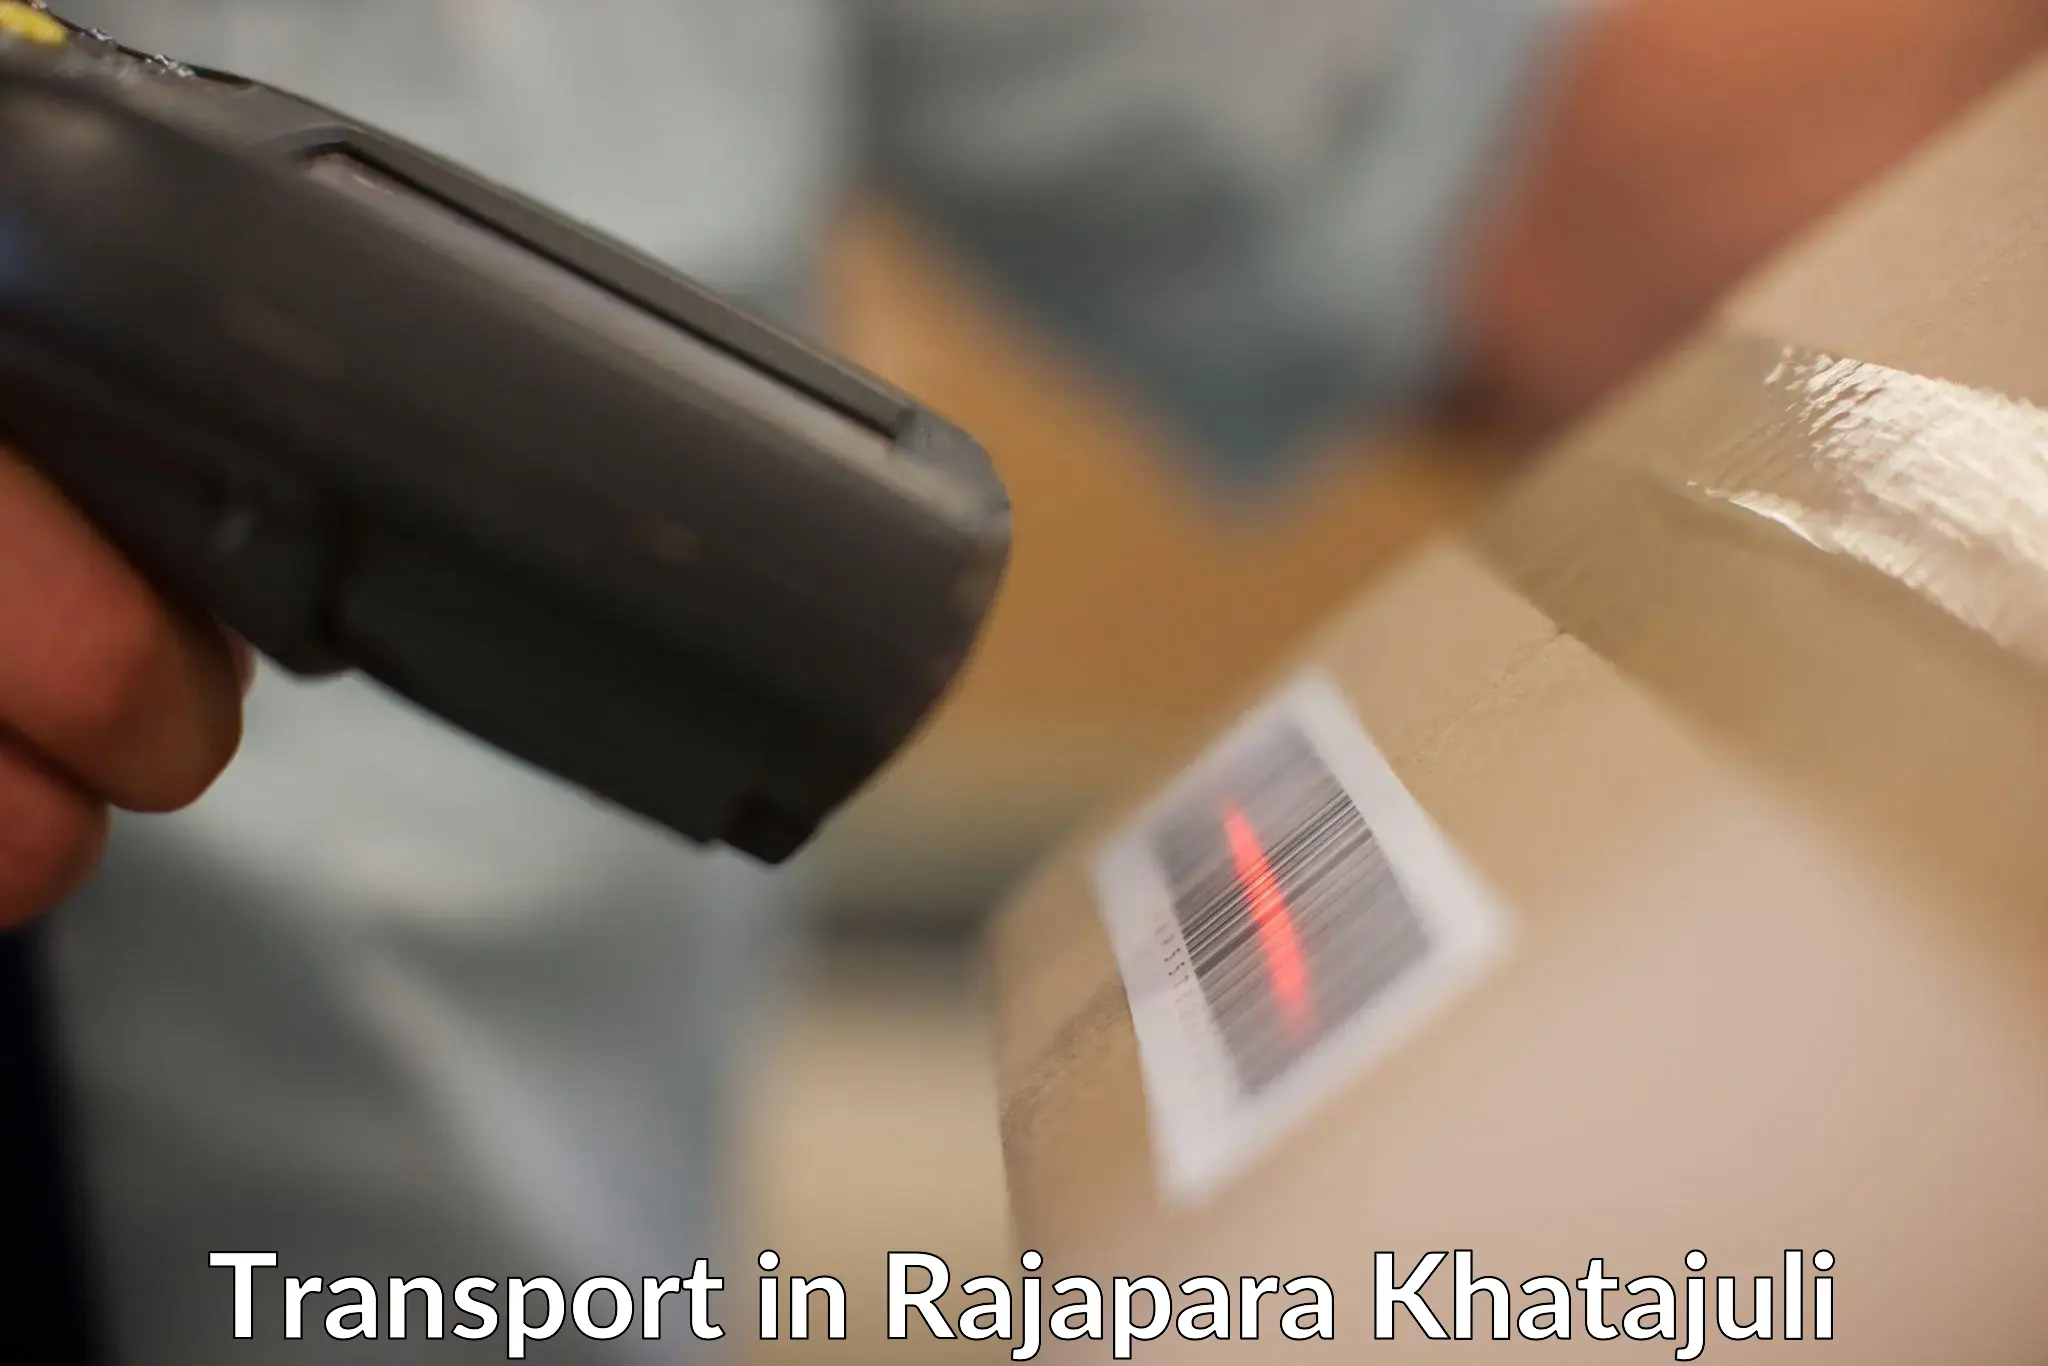 Shipping services in Rajapara Khatajuli